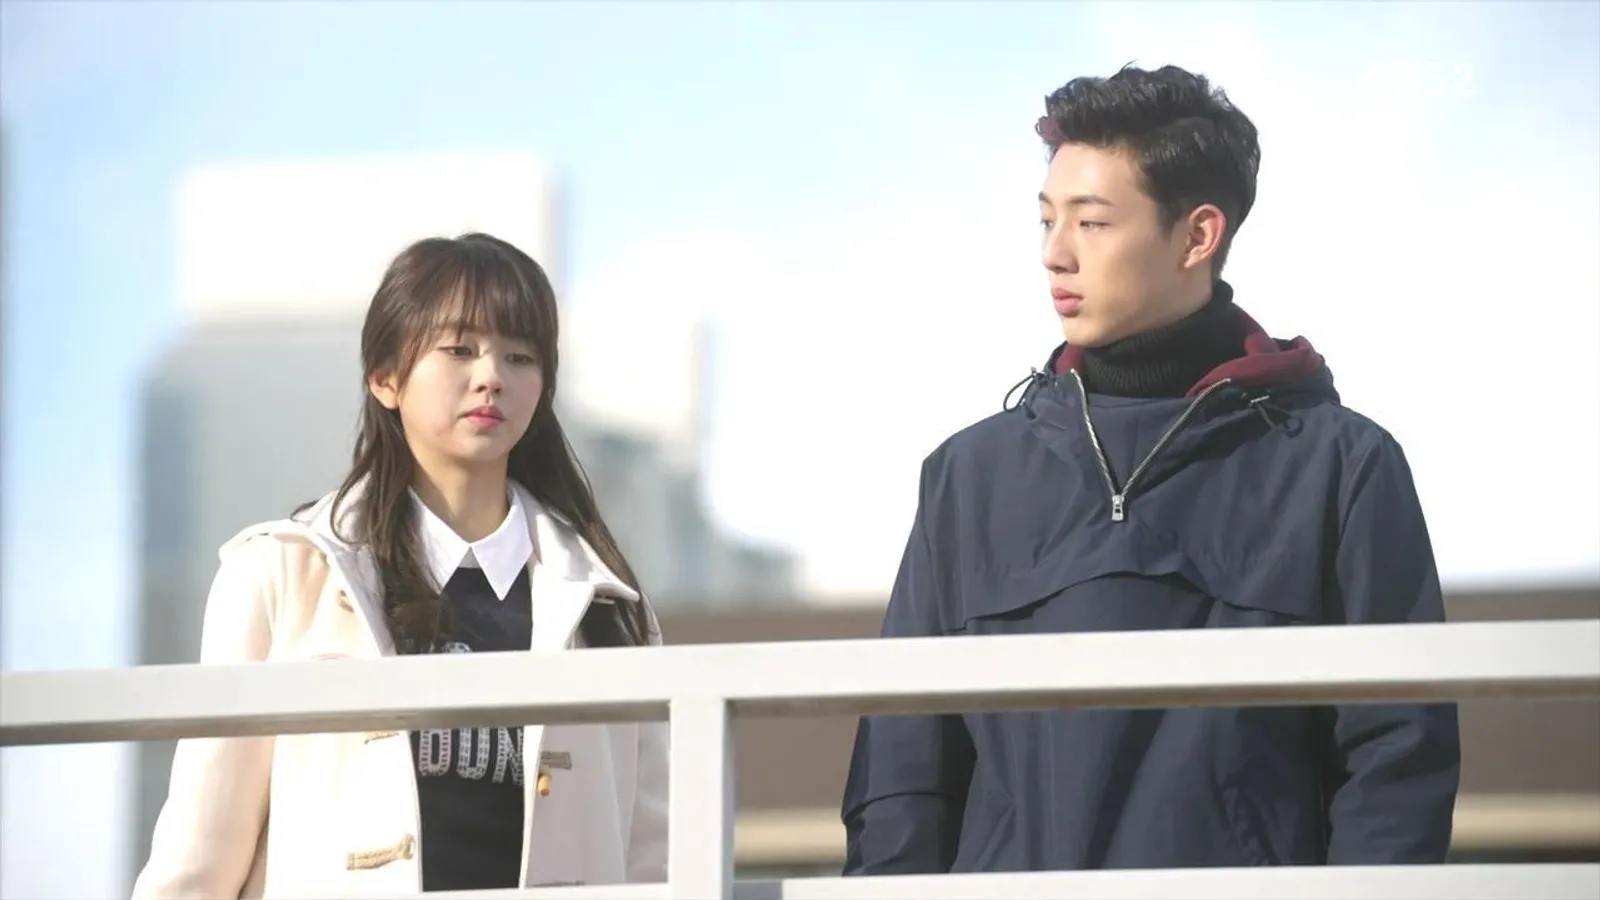 7 Drama Korea Romantis Berepisode Pendek Ini Pas Ditonton Saat Weekend